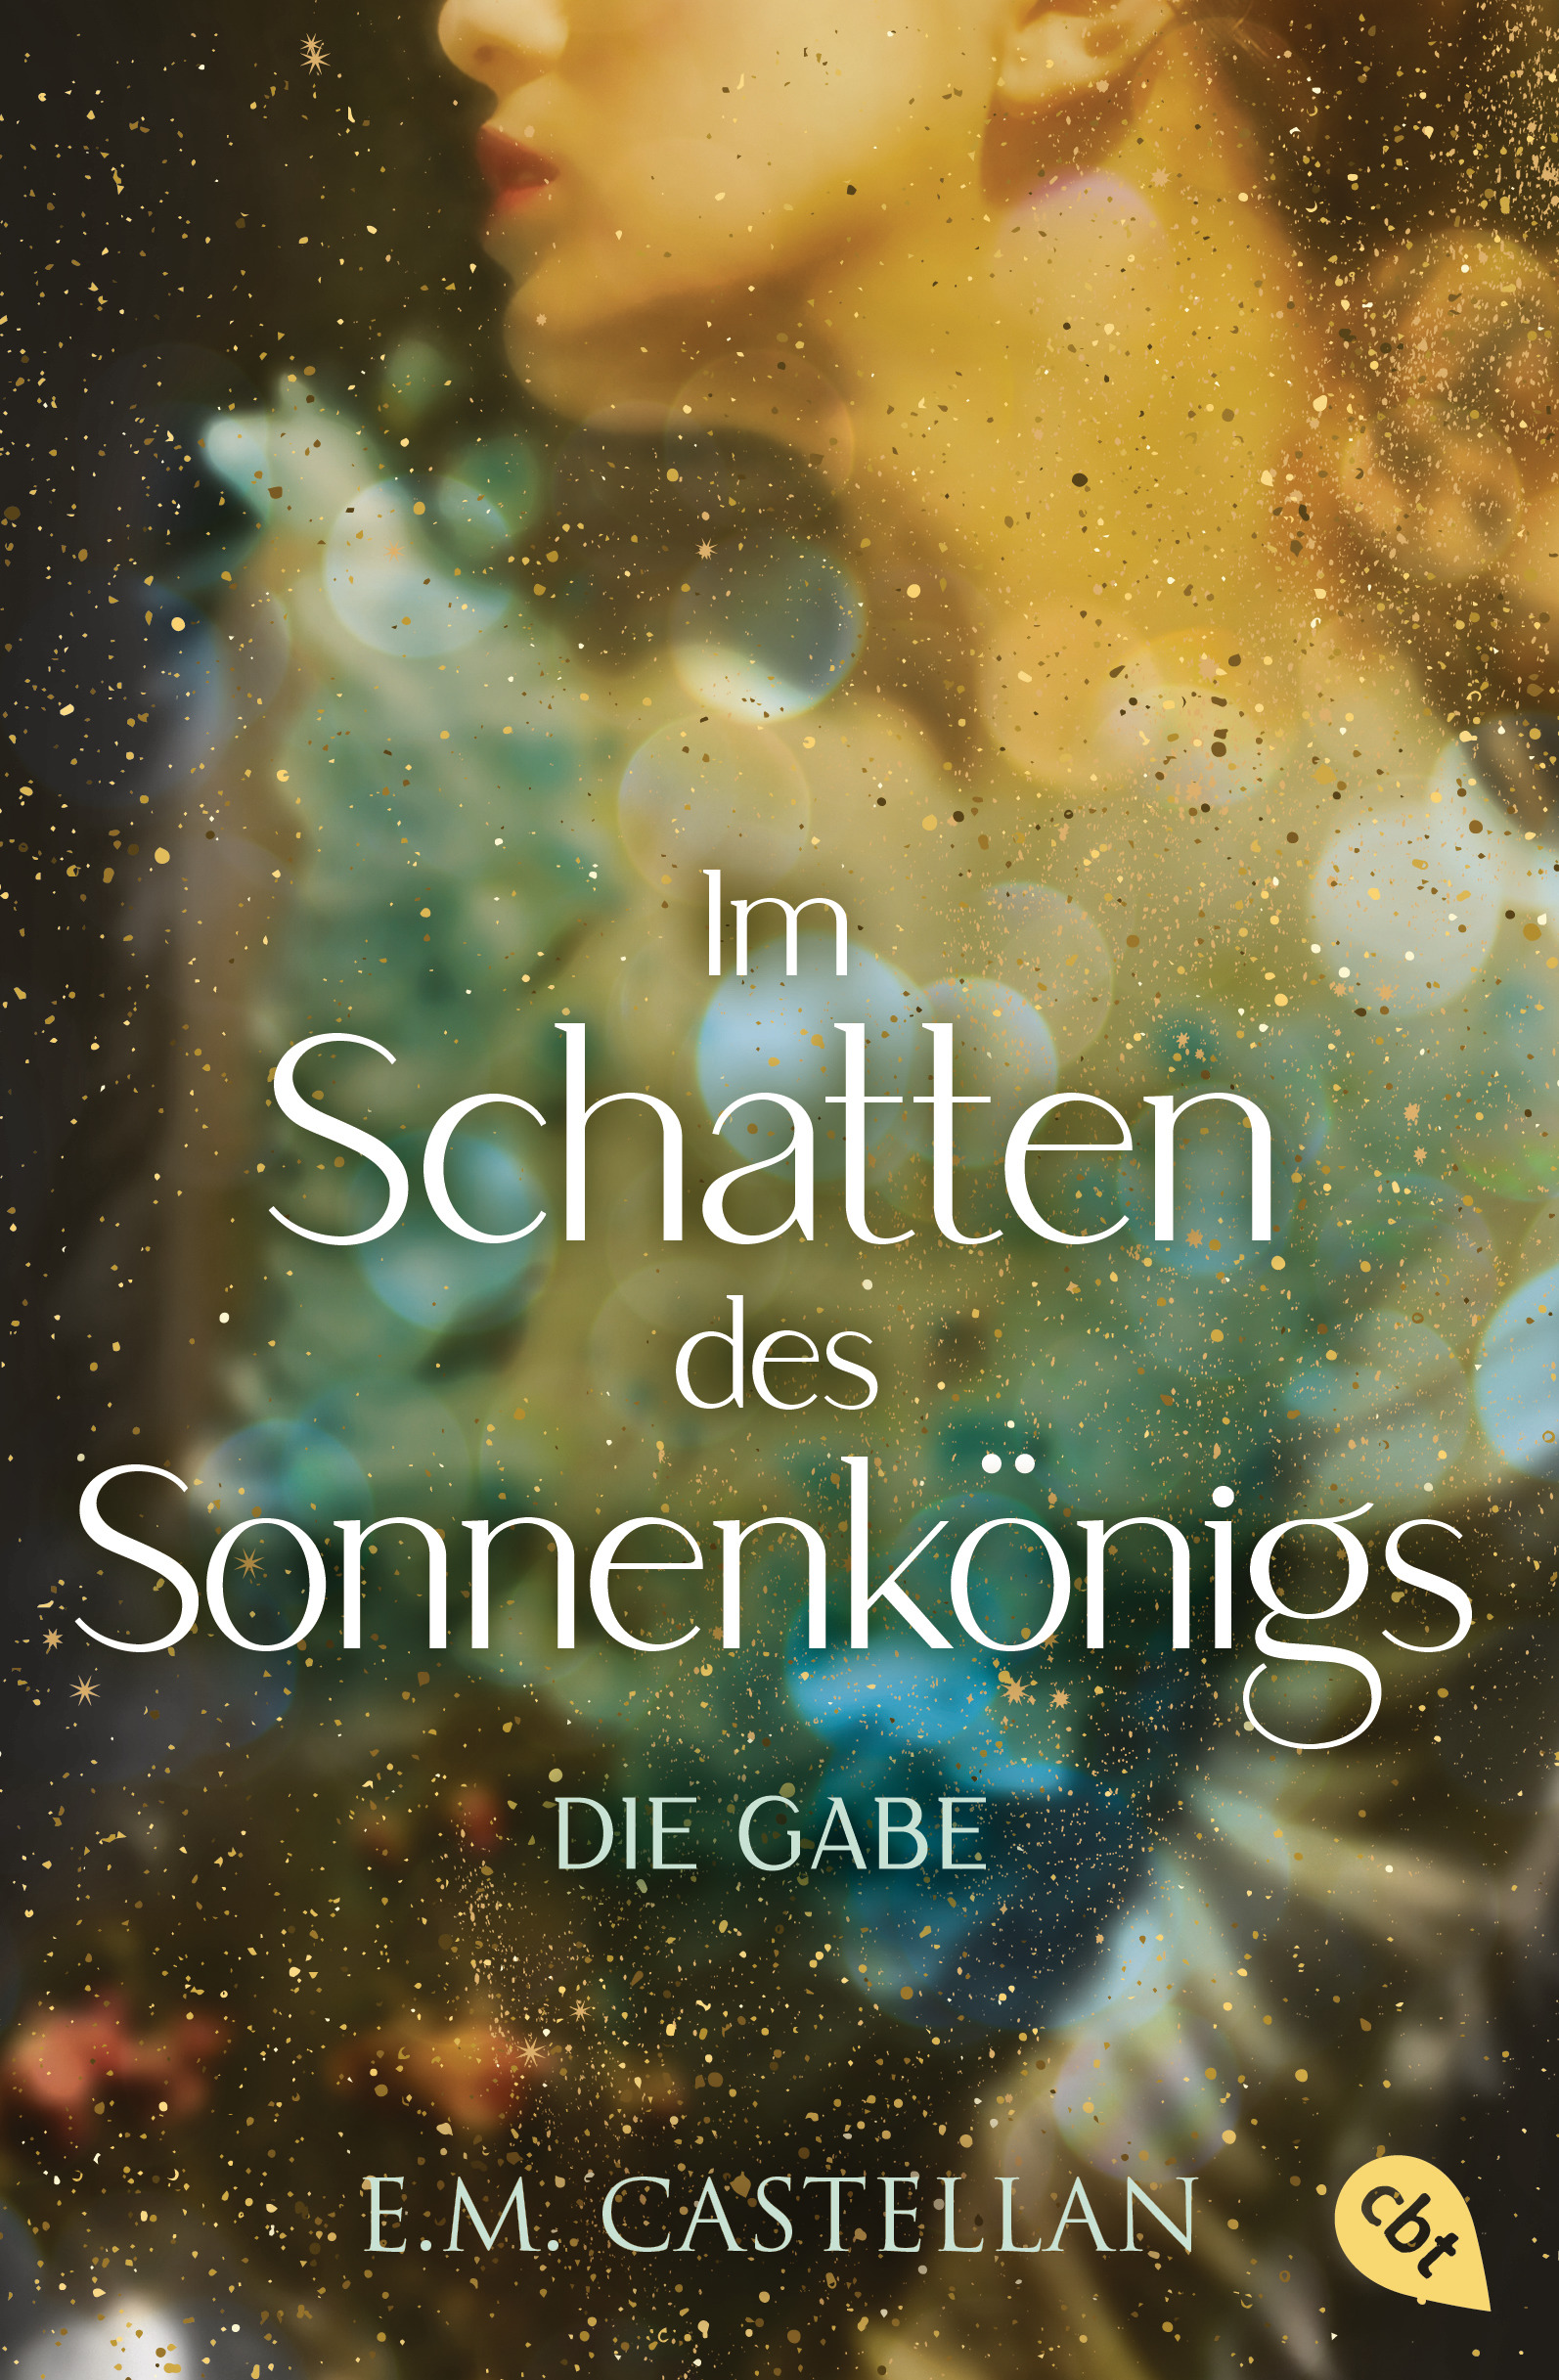 Bücherblog. Neuerscheinungen. Buchcover. Im Schatten des Sonnenkönigs - Die Gabe (Band 1) von E.M. Castellan. Fantasy. Romantasy. Jugendbuch. cbj.